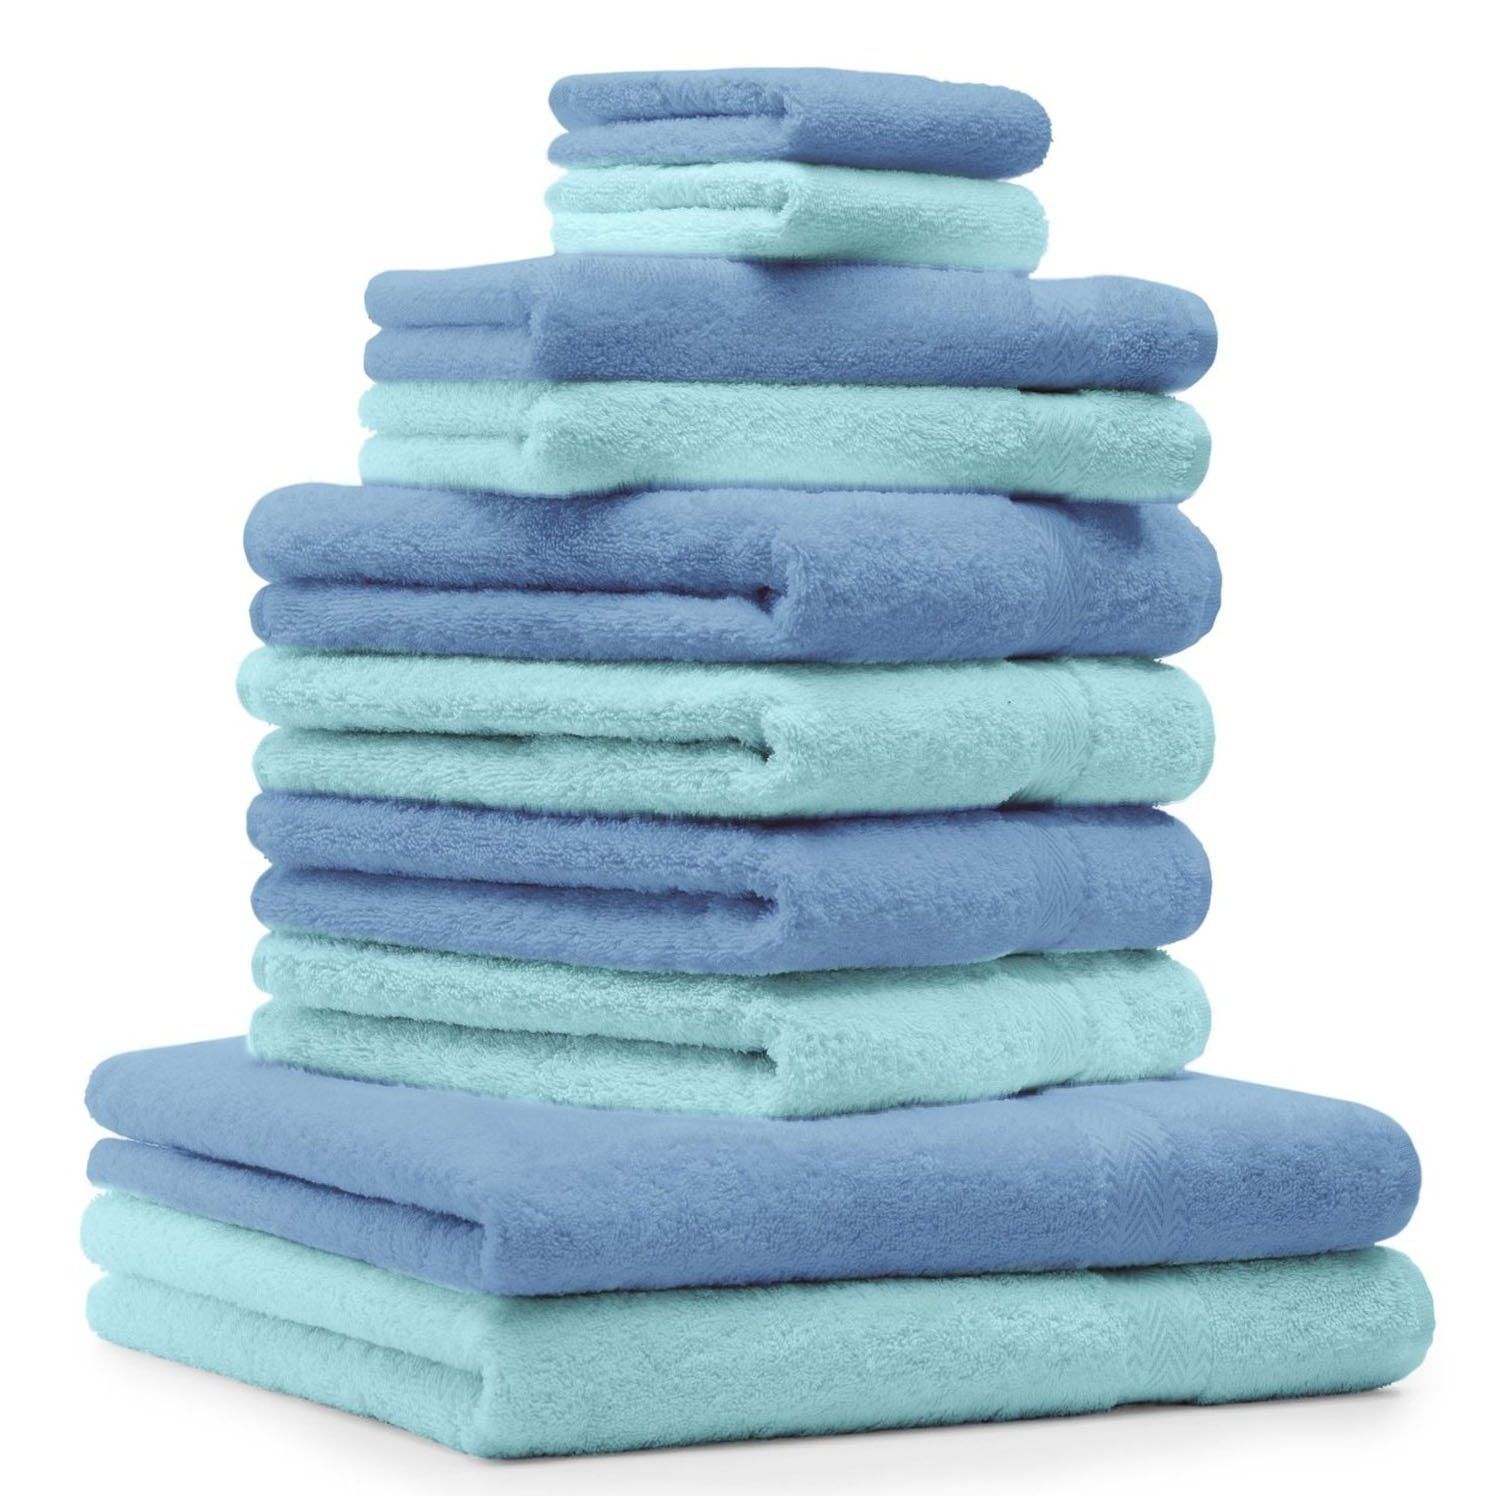 Betz Handtuch Set 10-TLG. Handtuch-Set Classic Farbe türkis und hellblau, 100% Baumwolle | Handtuch-Sets